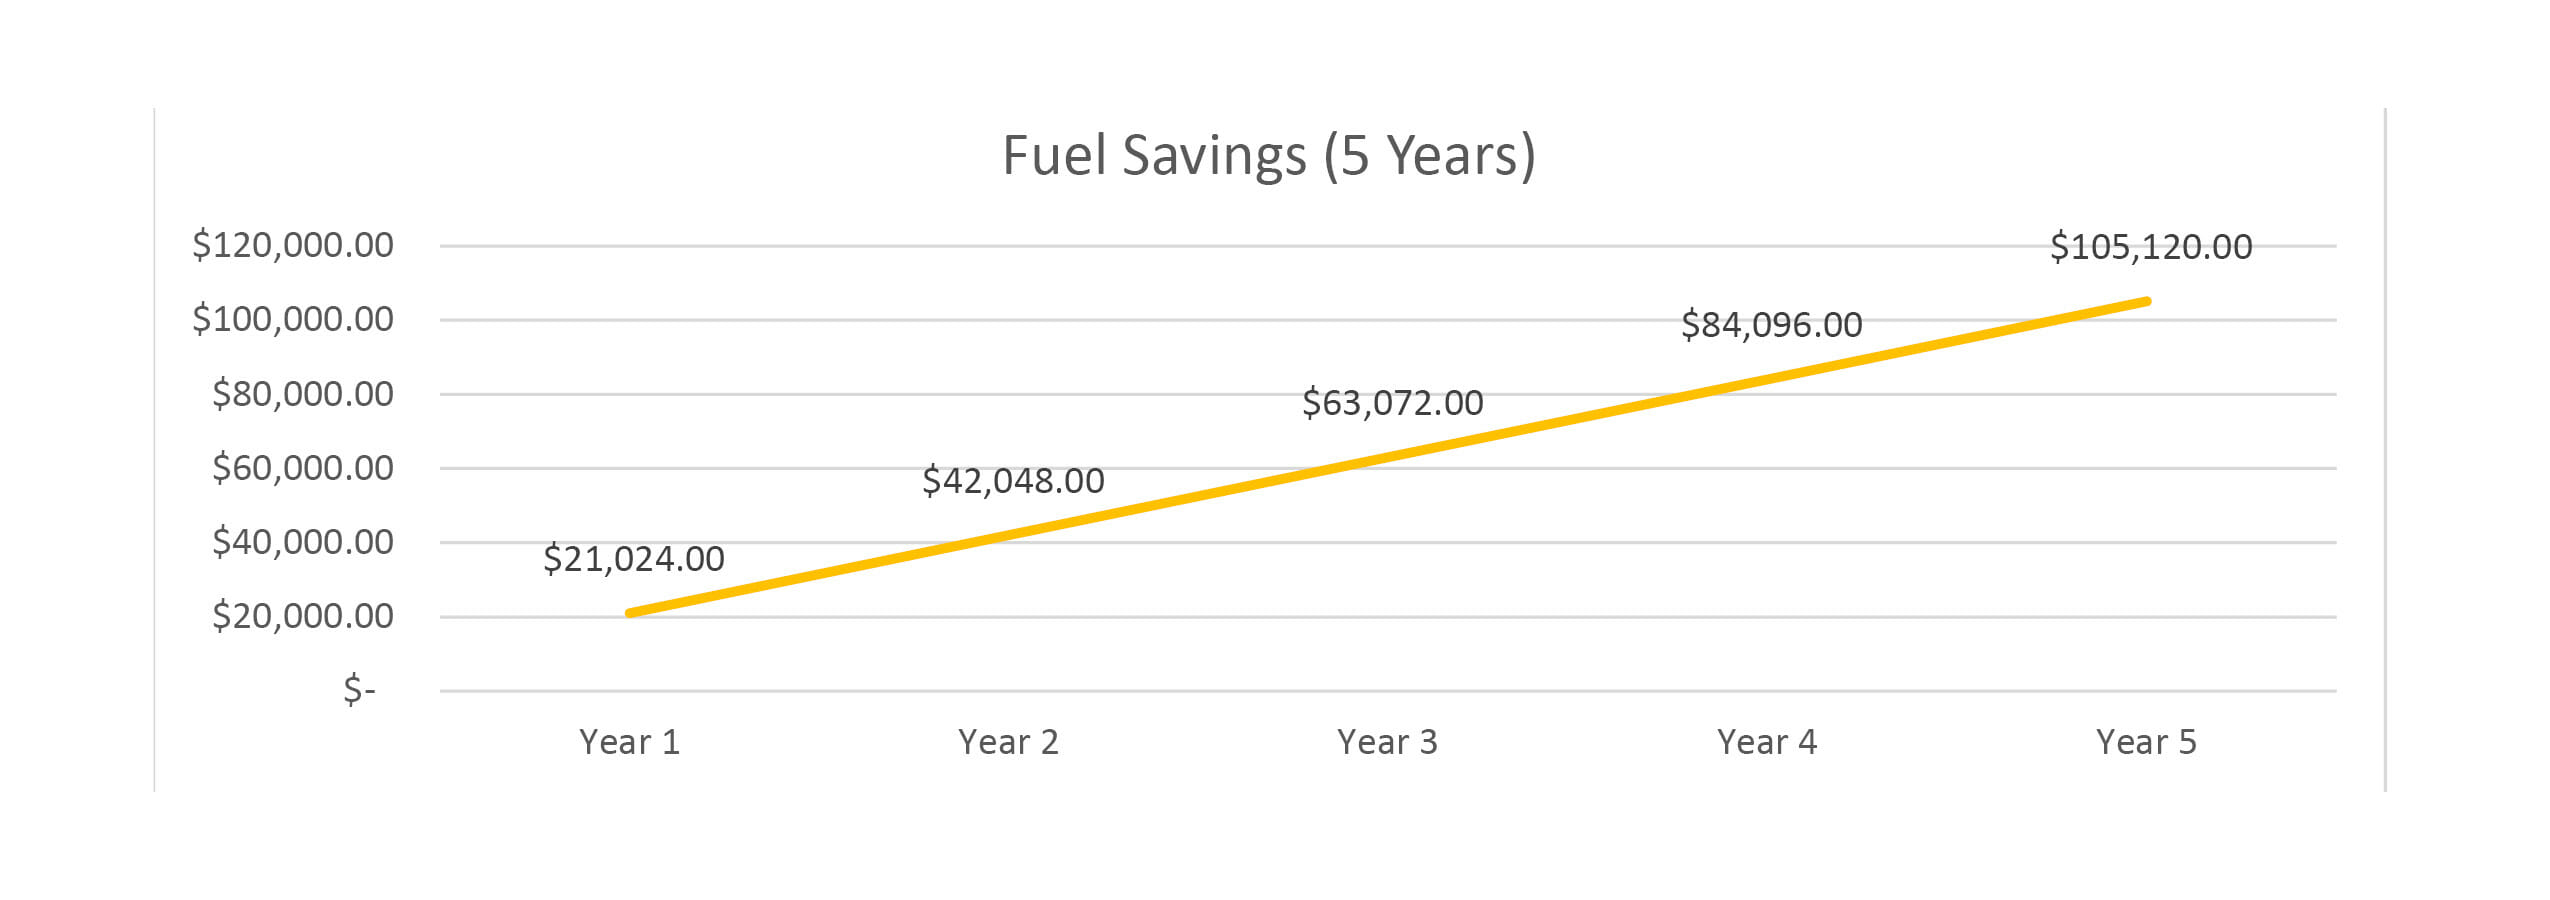 Fuel Savings Chart 5 Years